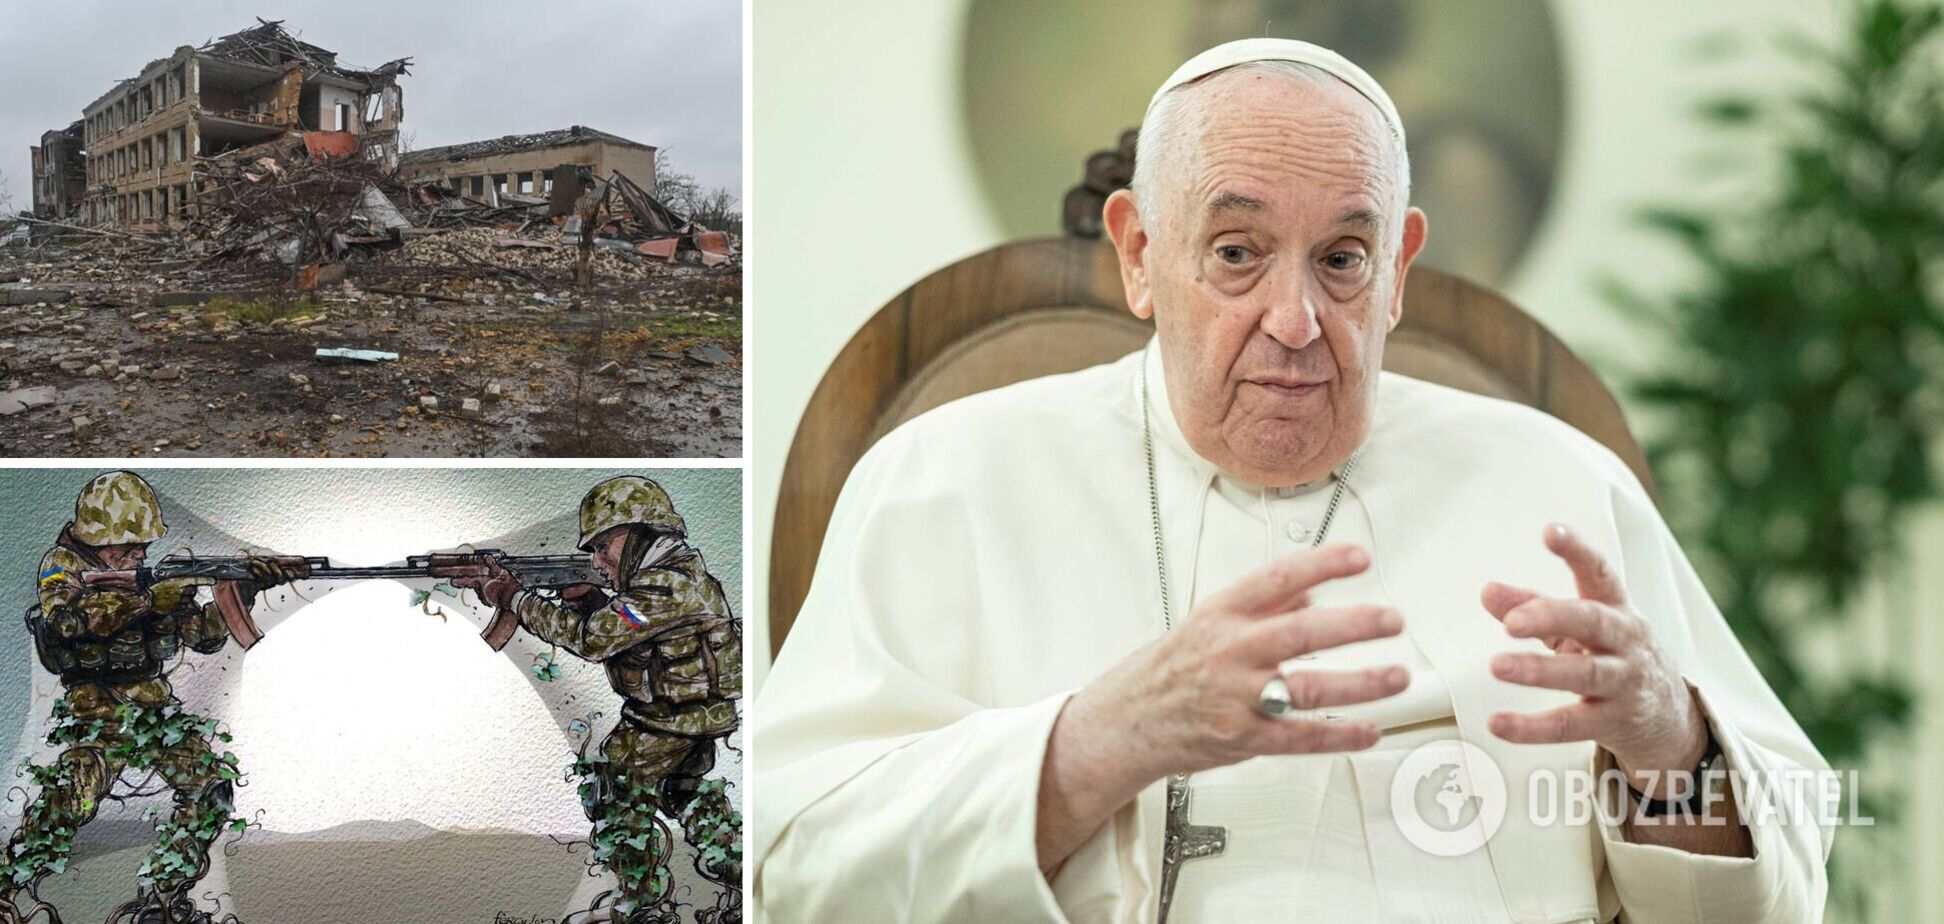 'На карту поставлено багато': Папа Римський назвав війну в Україні 'світовою' і зробив прогноз щодо її тривалості